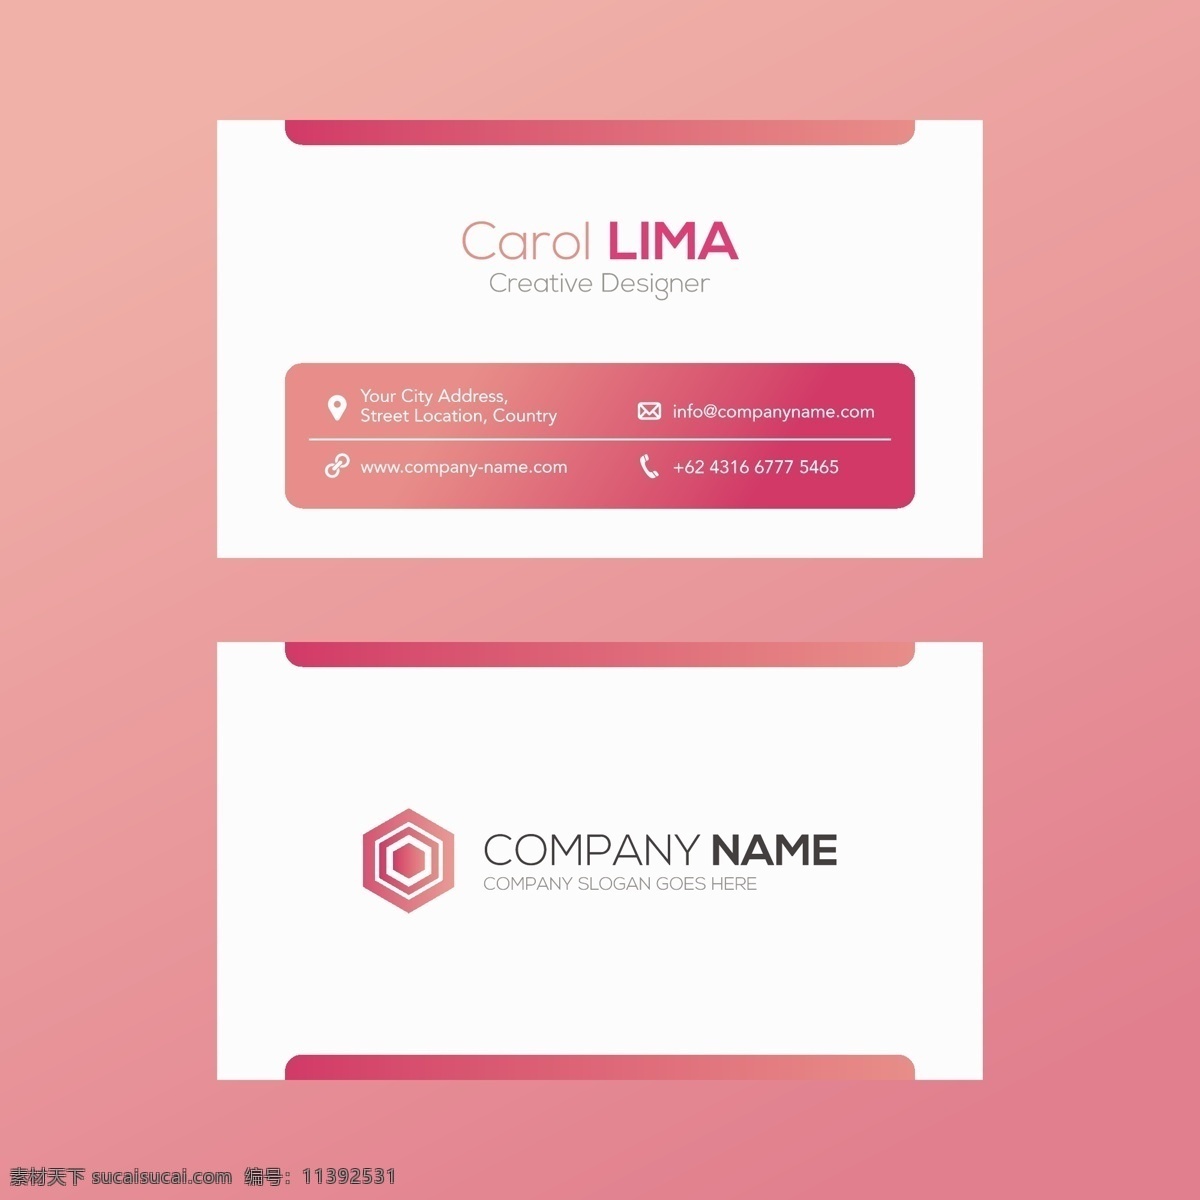 黑白名片 商标 名片 商务 抽象 卡片 模板 办公室 粉红色 展示 文具 公司 抽象标志 企业标识 品牌 现代 白色 身份